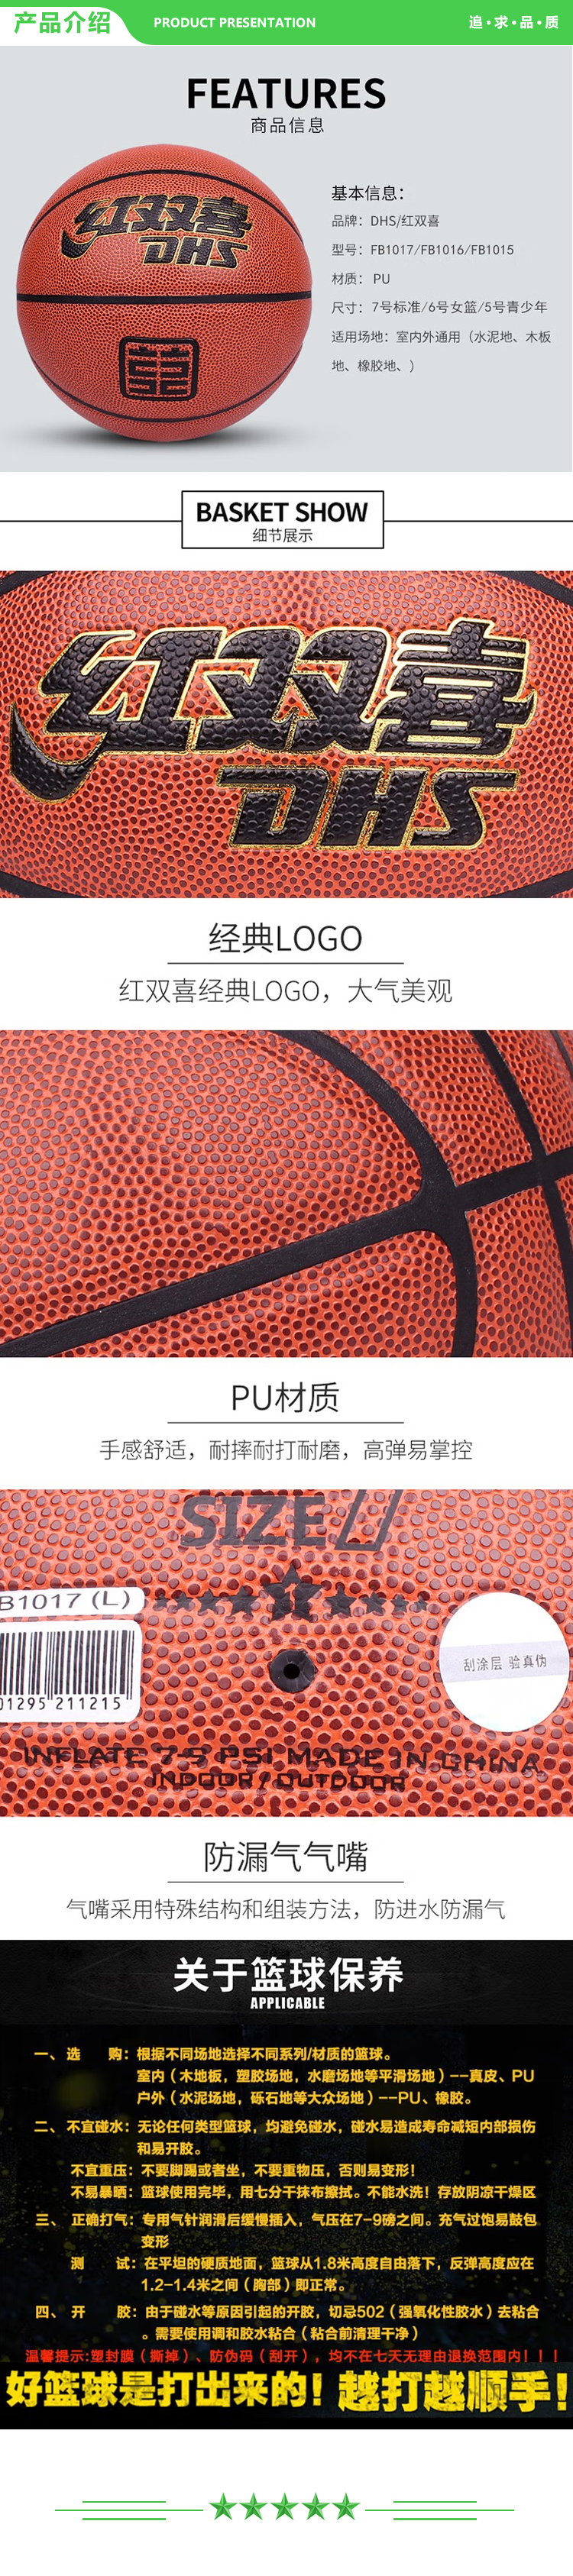 红双喜 DHS FB1016 六号篮球 一星级篮球室内外通用棕色PU球 一星级PU篮球 .jpg